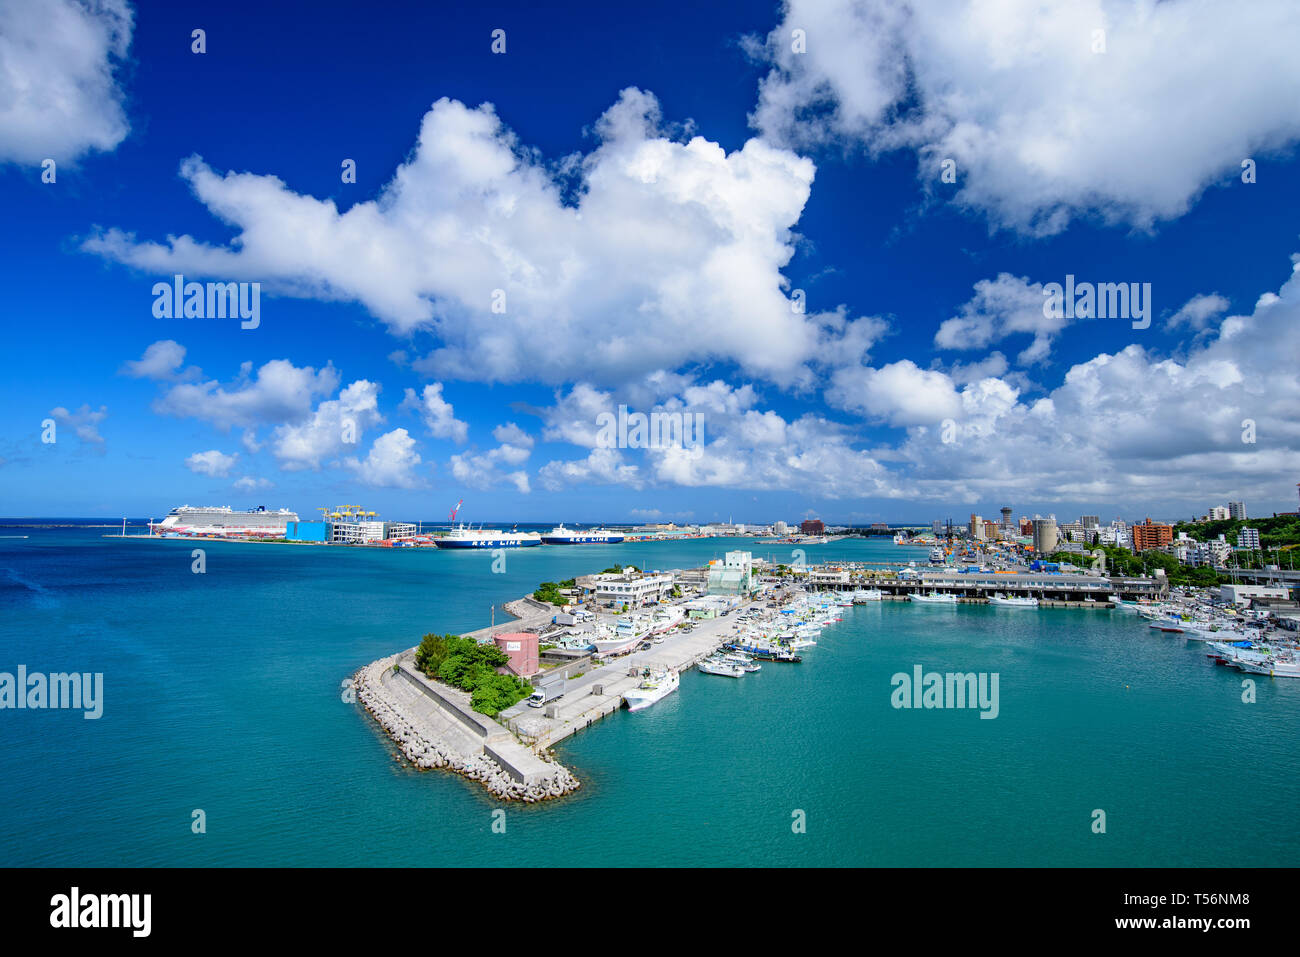 La vista aérea del puerto de Naha, Okinawa, Japón Foto de stock